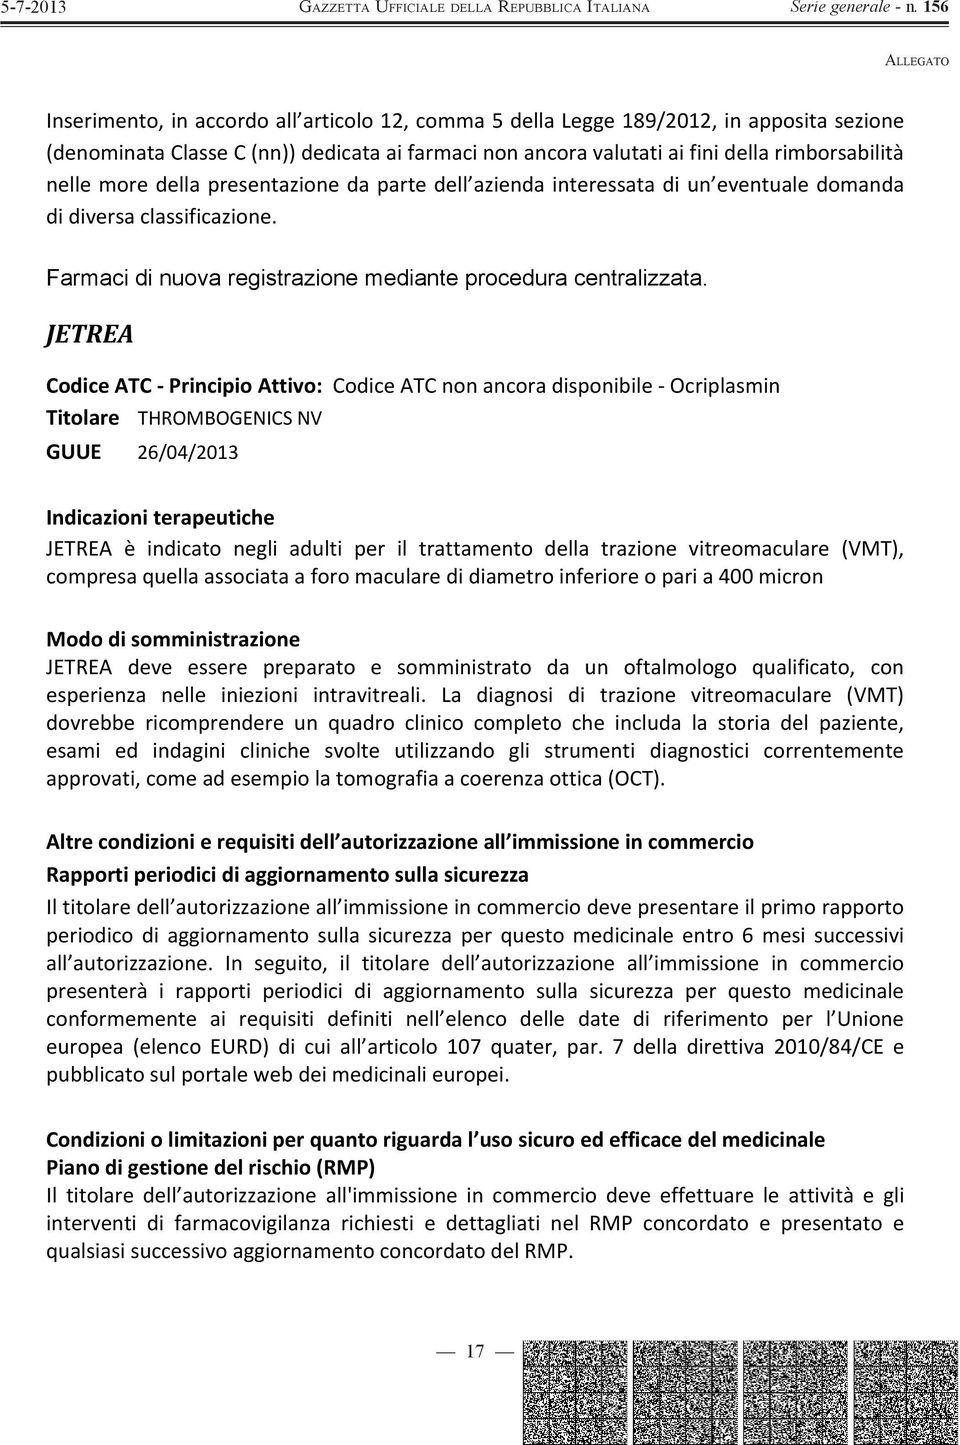 JETREA Codice ATC - Principio Attivo: Codice ATC non ancora disponibile - Ocriplasmin Titolare THROMBOGENICS NV GUUE 26/04/2013 Indicazioni terapeutiche JETREA è indicato negli adulti per il